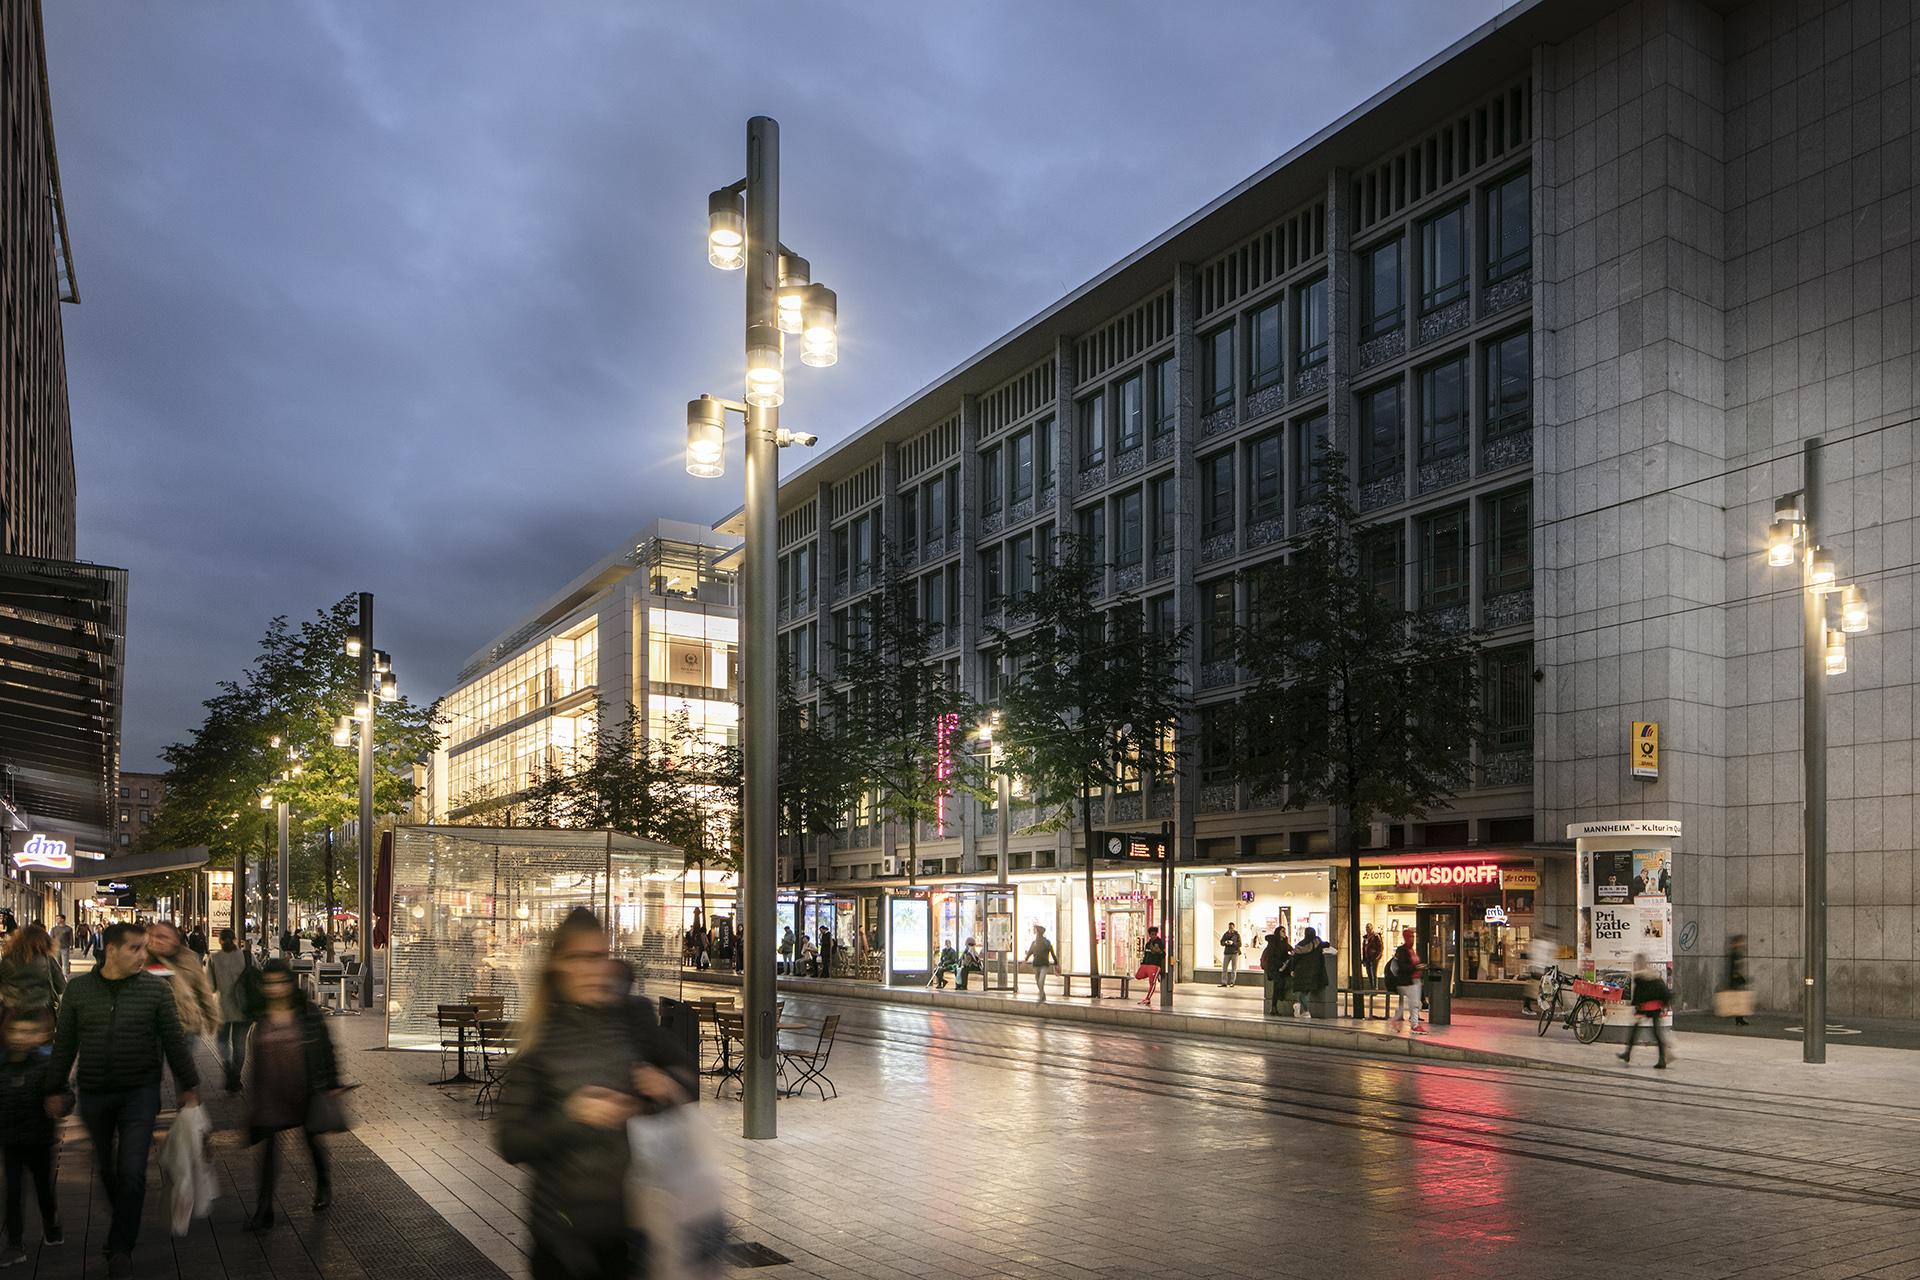 Schréder a conçu un luminaire sur mesure pour éclairer le célèbre havre commercial Planken qui reflète le caractère de la ville